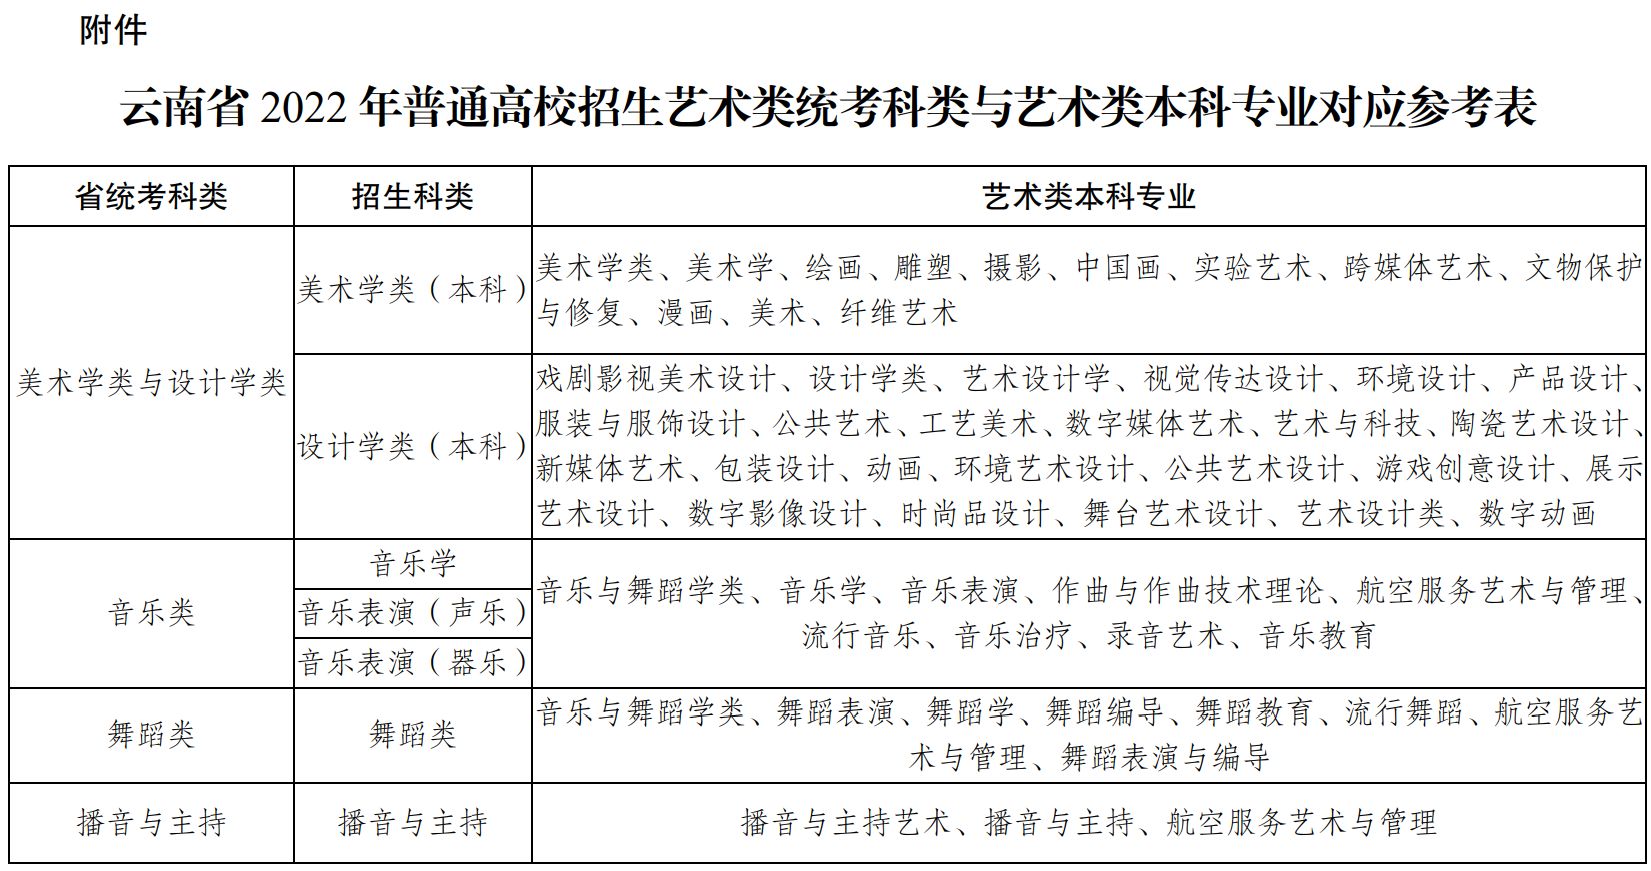 2022年云南省普通高校藝術類專業考試招生工作安排和要求